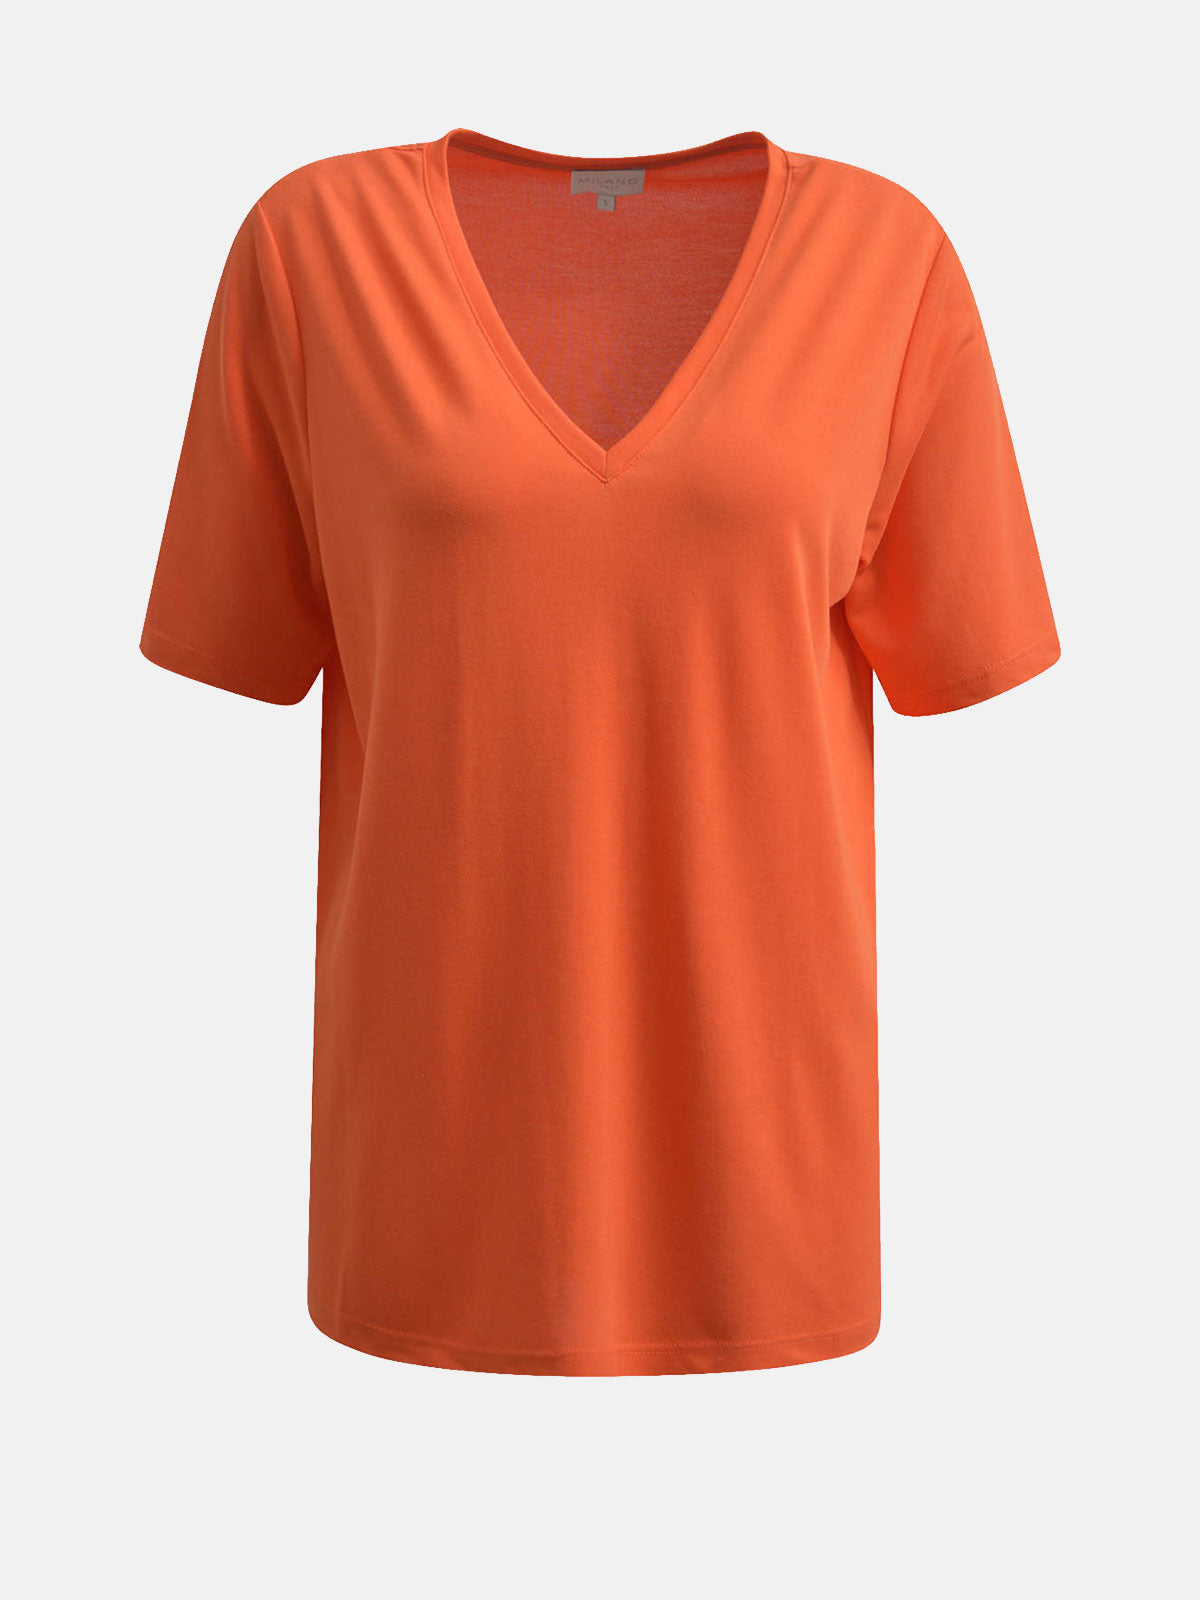 V-Neck Tshirt in Hot Orange